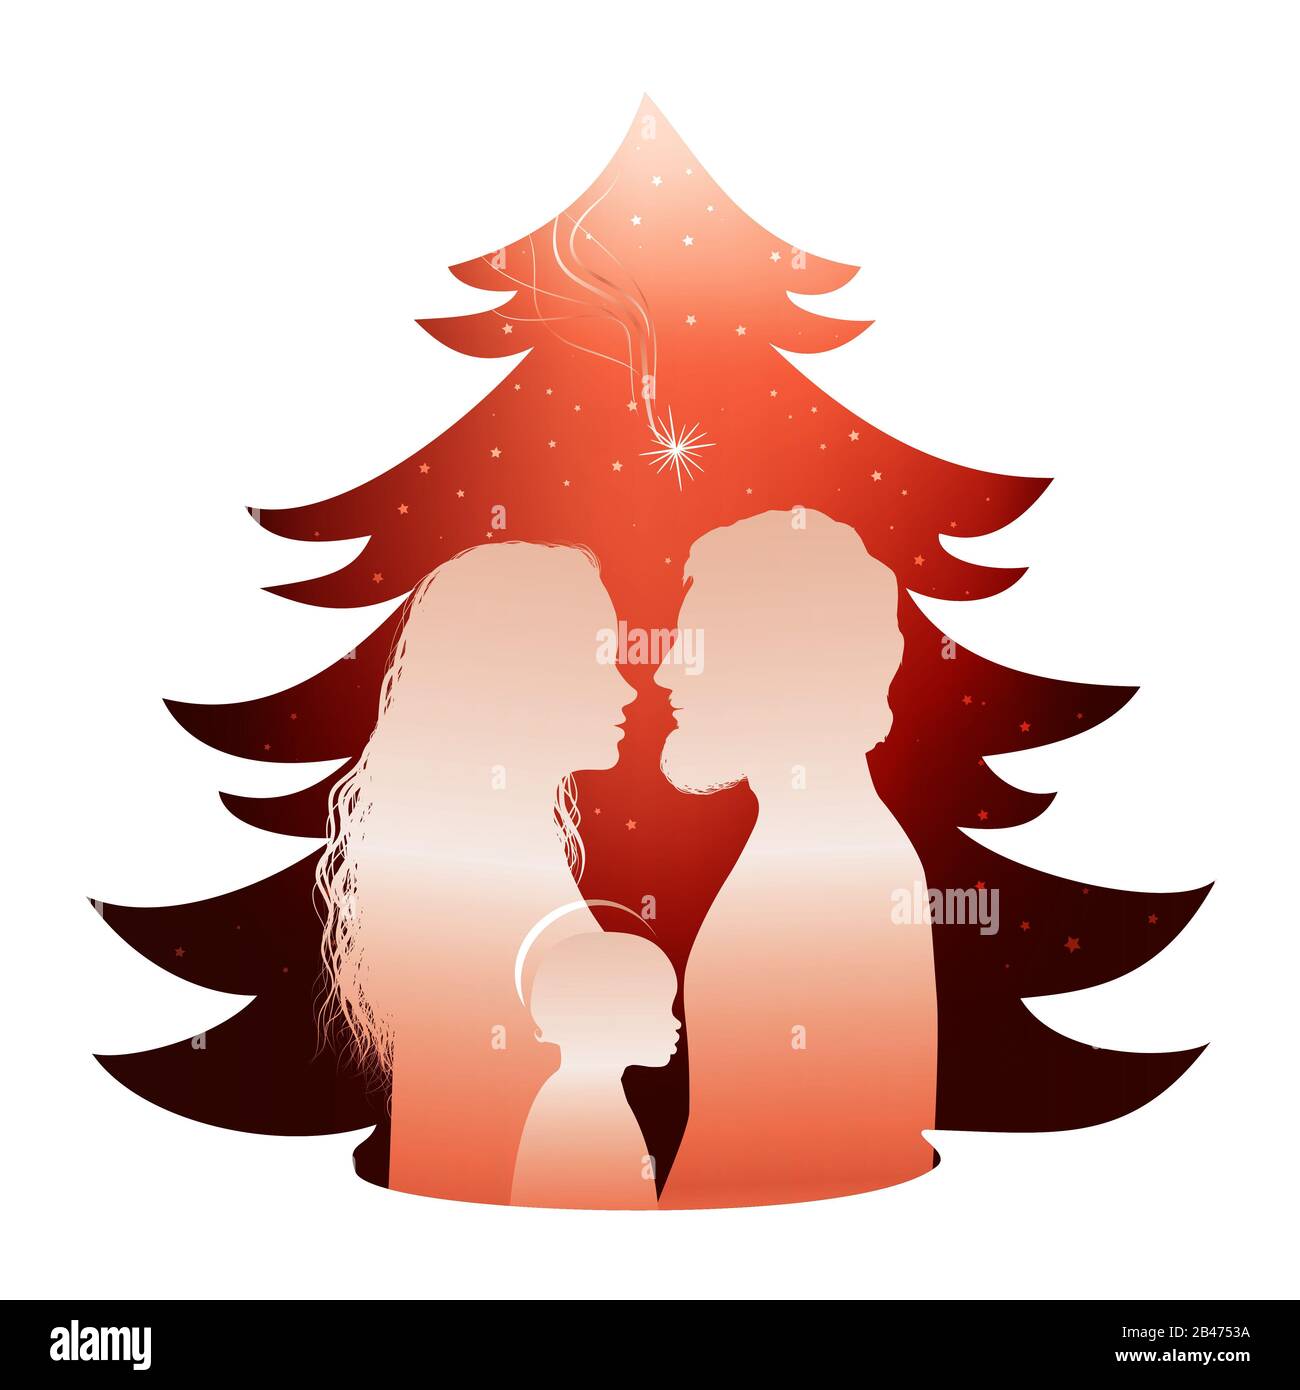 Isolierte Weihnachtsbaum Krippe mit heiligen Familie. Silhouette Profil whit Joseph - Maria und Baby Jesus auf rotem Hintergrund Stockfoto